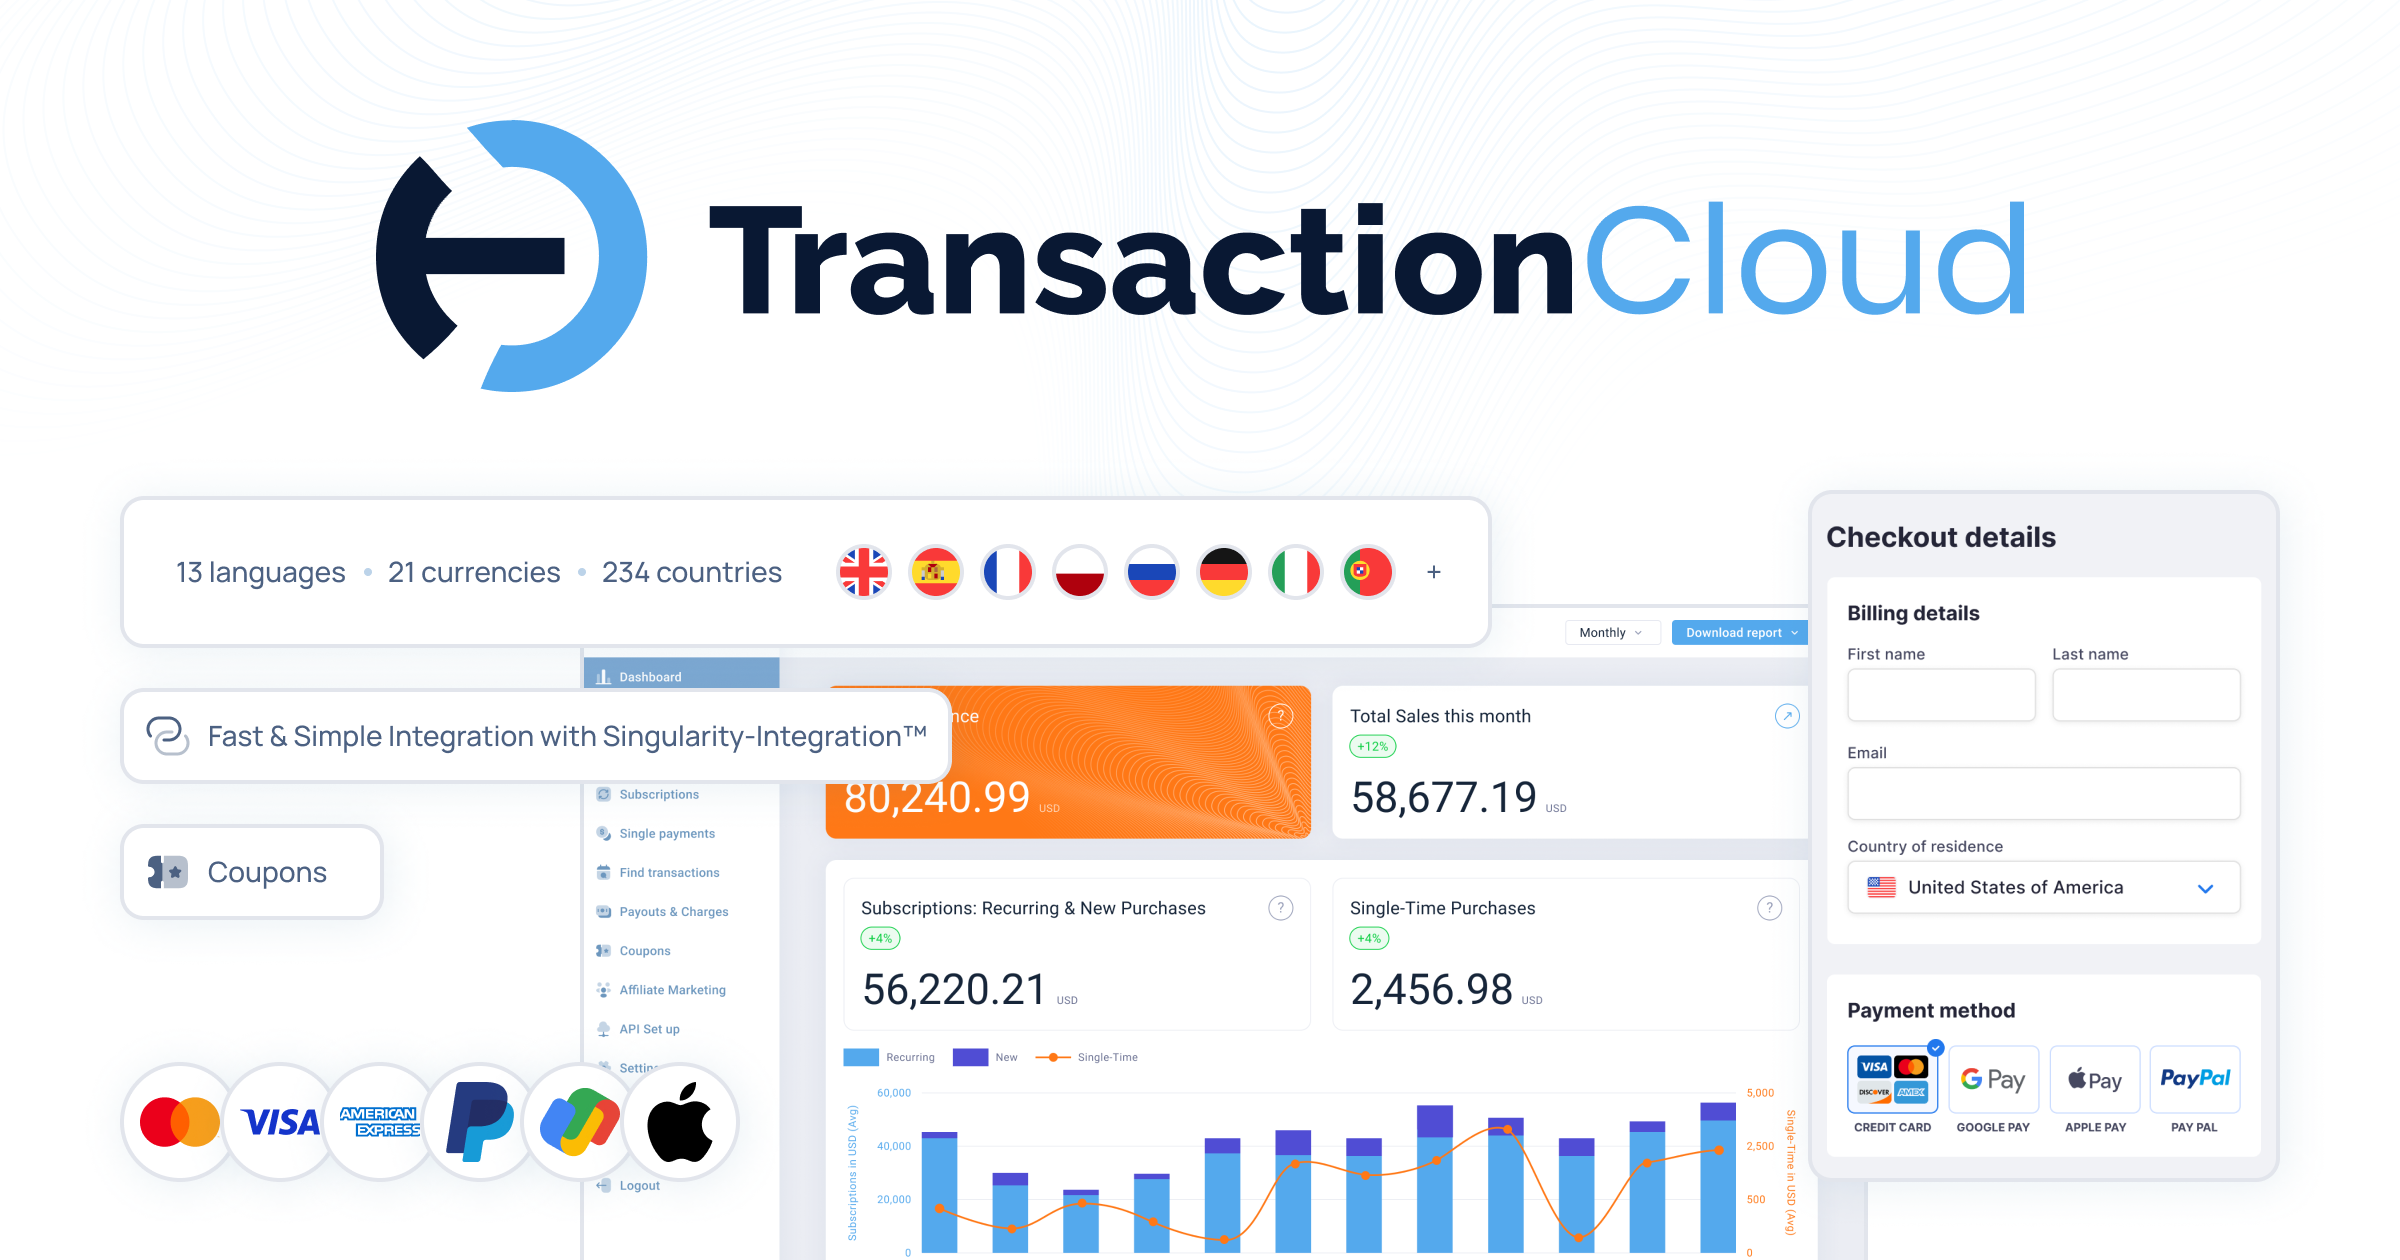 Transaction Cloud